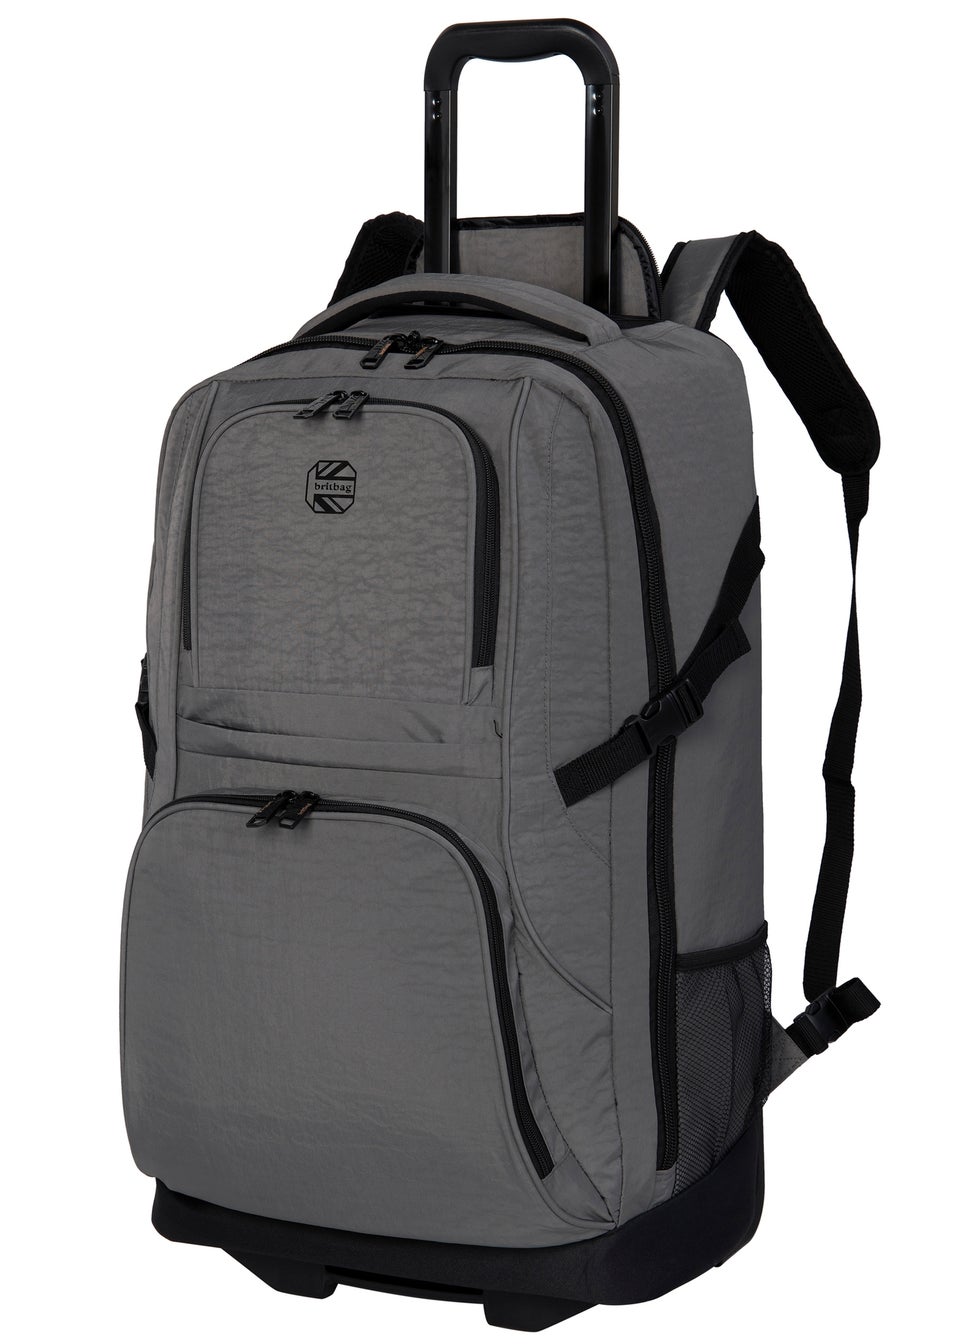 BritBag Nauru Charcoal Large Trolley Backpack